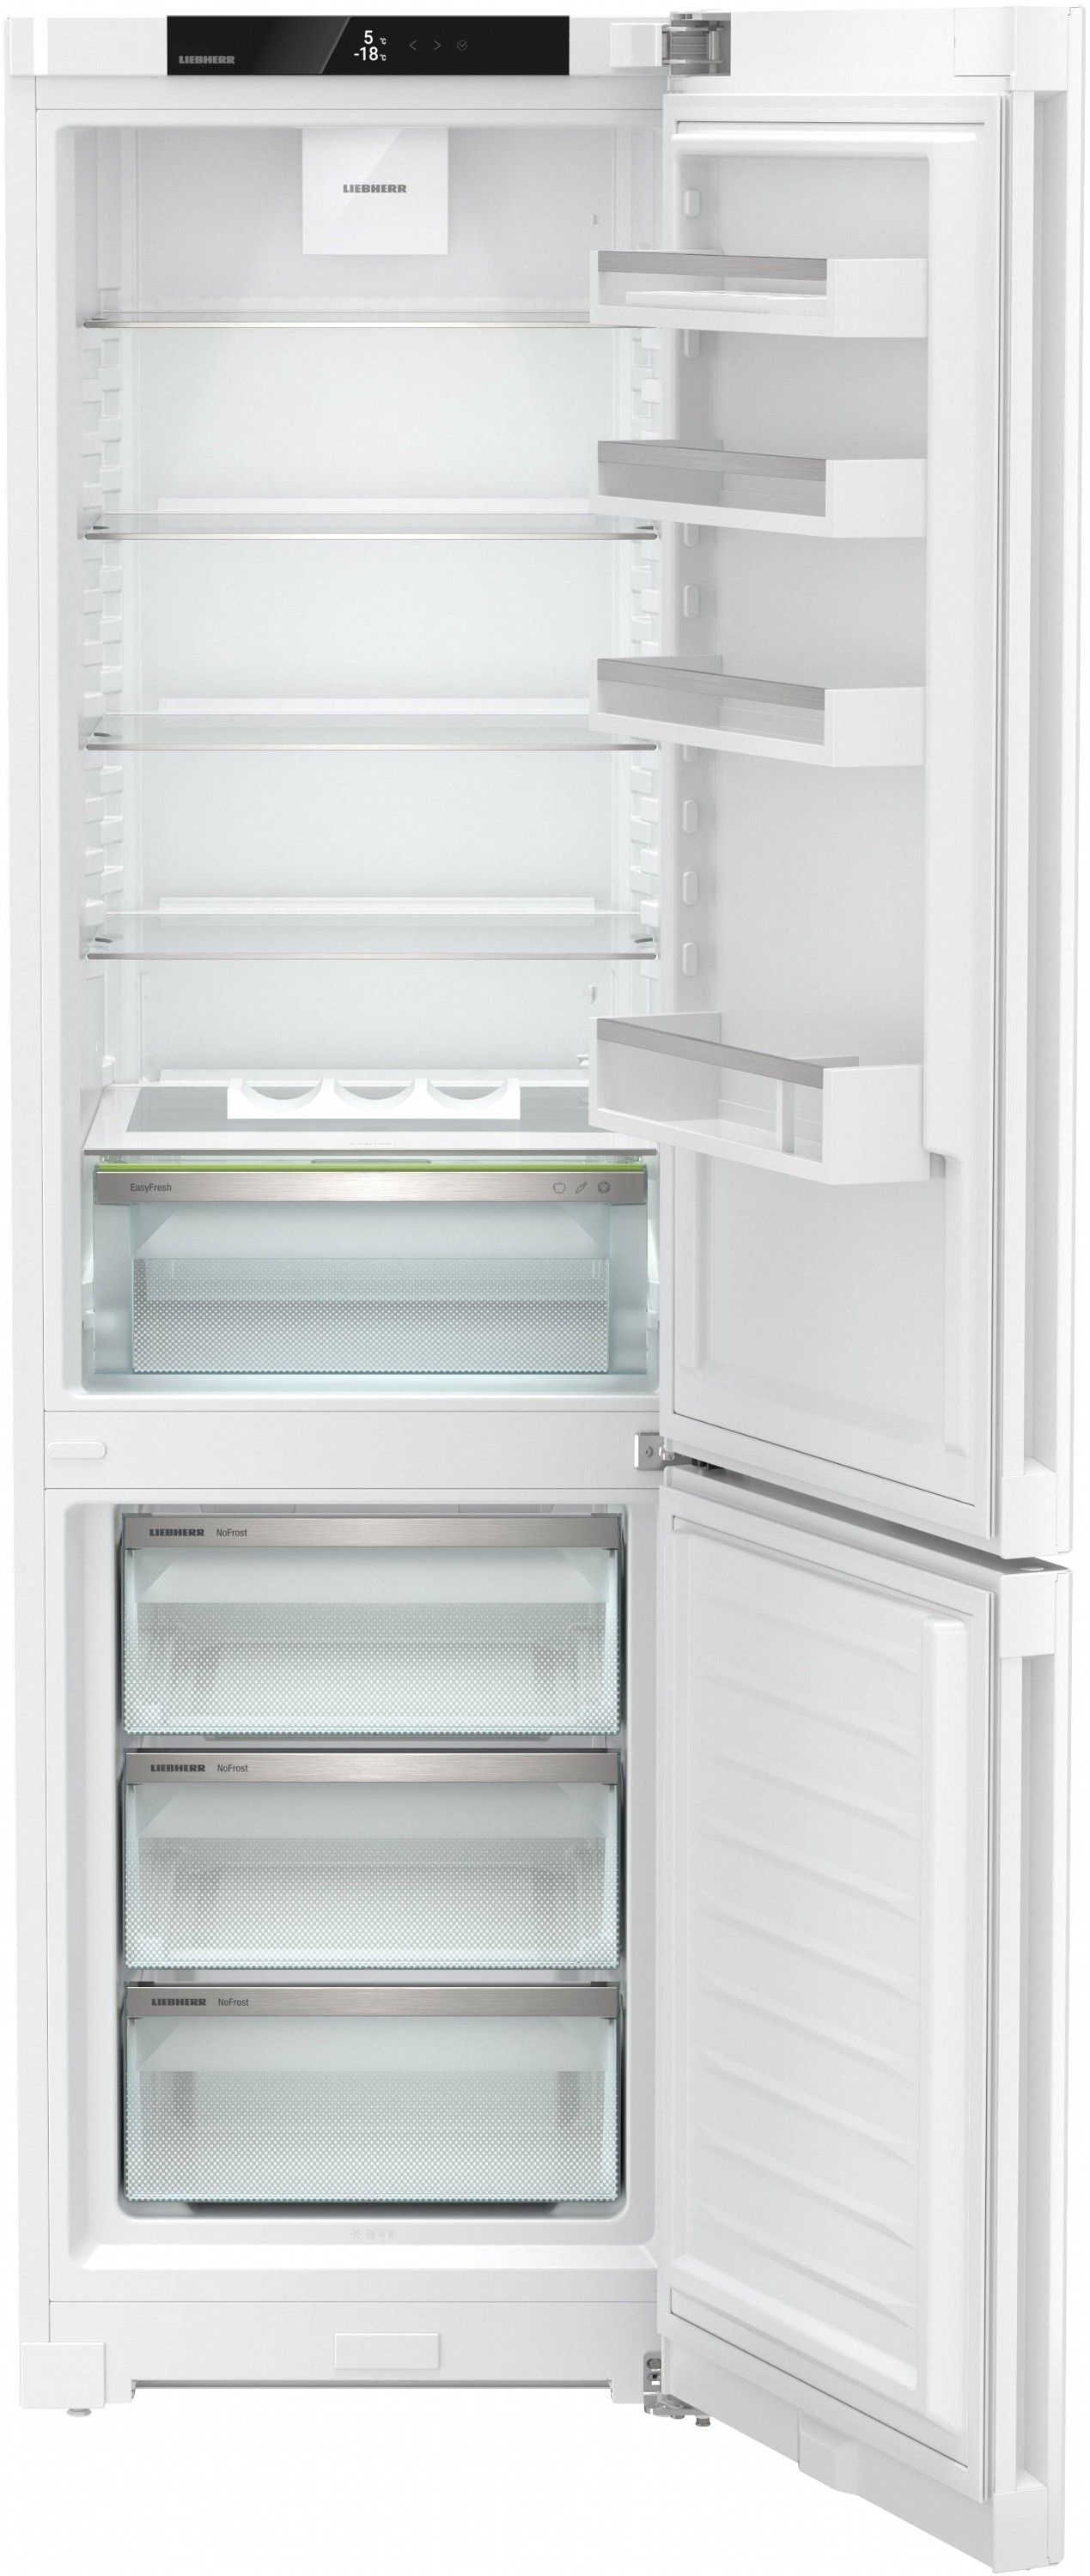 Холодильник Liebherr CND 5703 отзывы - изображения 5